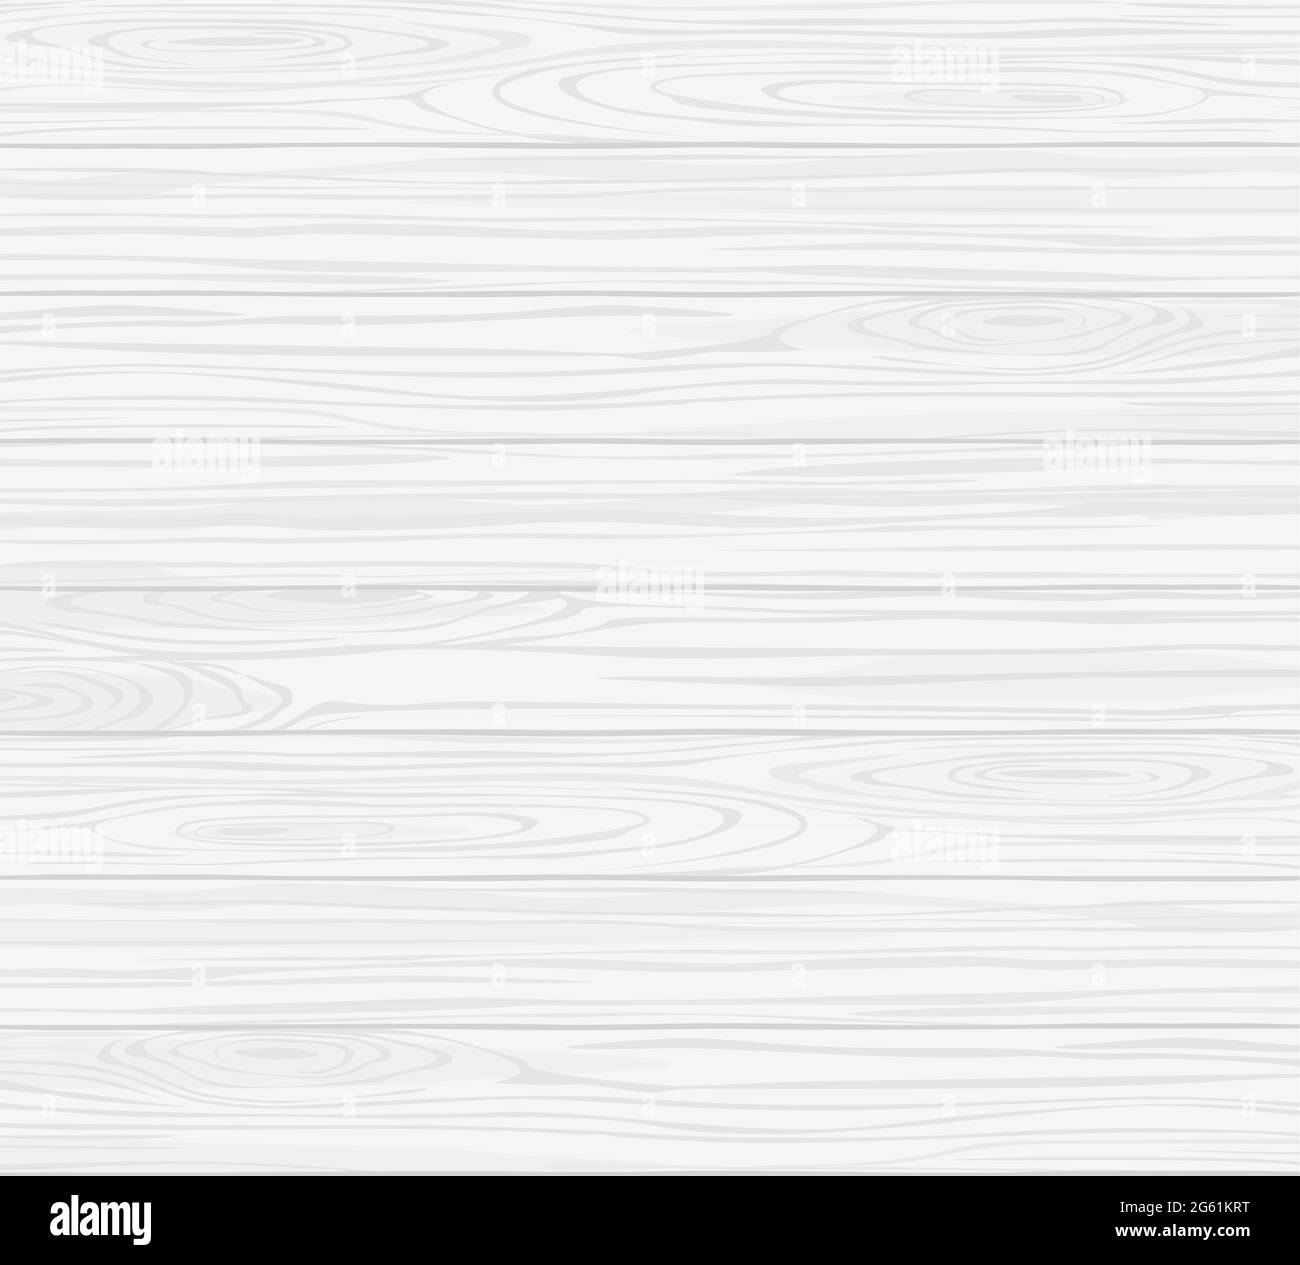 Weiße Holz Textur Vektor-Illustration, Holz horizontale Lichtplanke Muster mit Grunge-Oberfläche für Parkett, moderne strukturierte raue Wand Stock Vektor